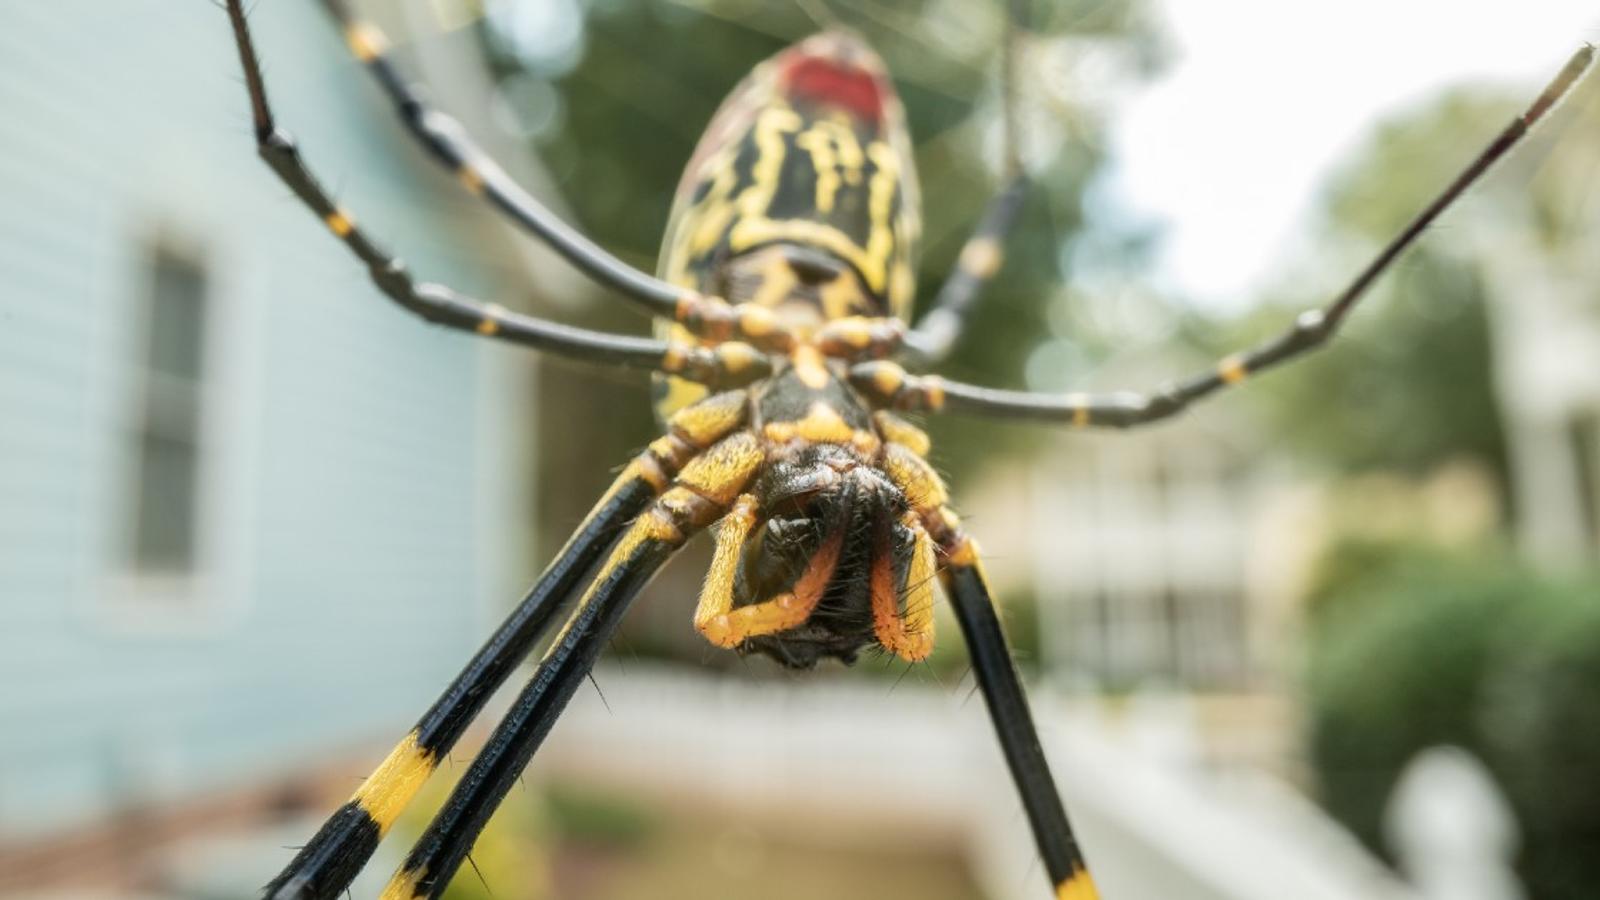 Une araignée géante pourrait bientôt arriver au Canada, prévient un expert